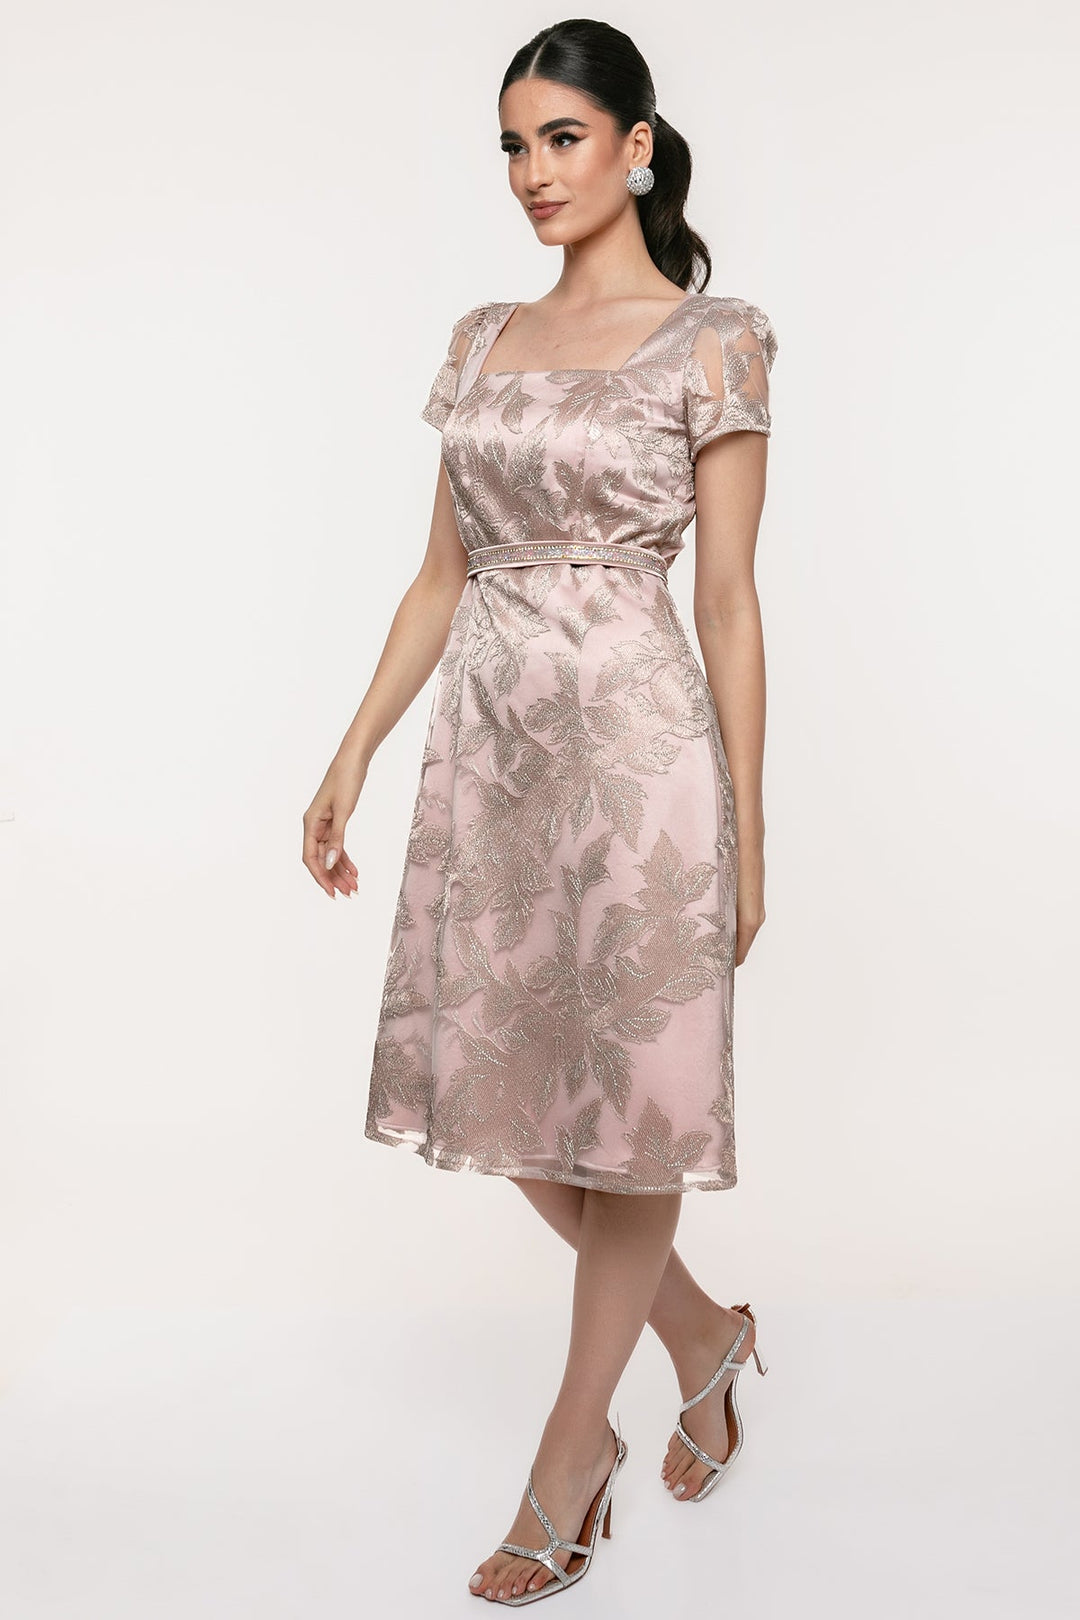 Φόρεμα μίντι δαντέλα Coelia - A Collection Boutique